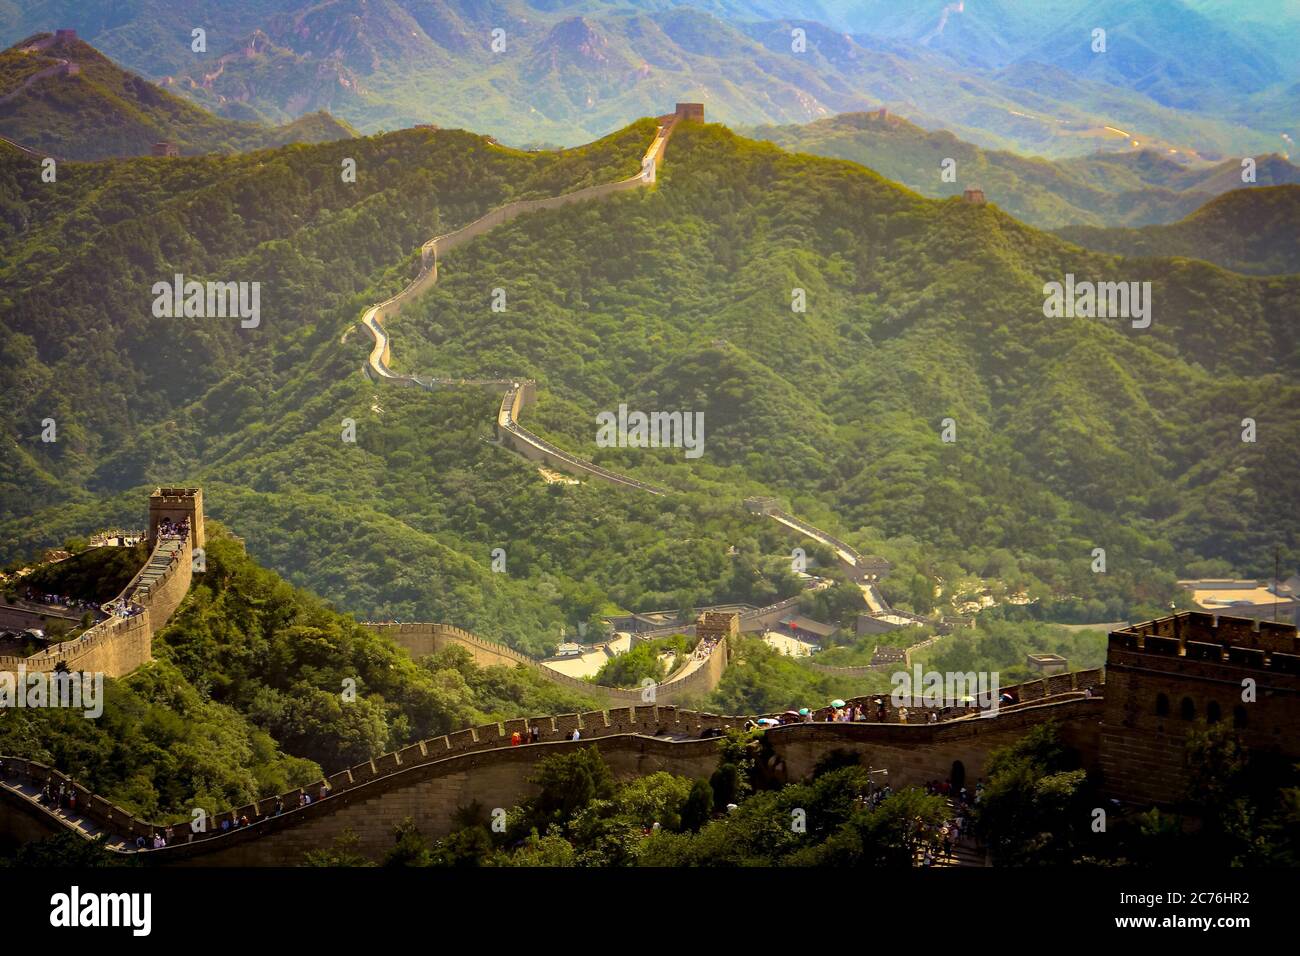 Die Chinesische Mauer in Badaling, Bezirk Yanqing, Gemeinde Peking, China, ist ein Wahrzeichen der Welt und eines der sieben Weltwunder. Stockfoto